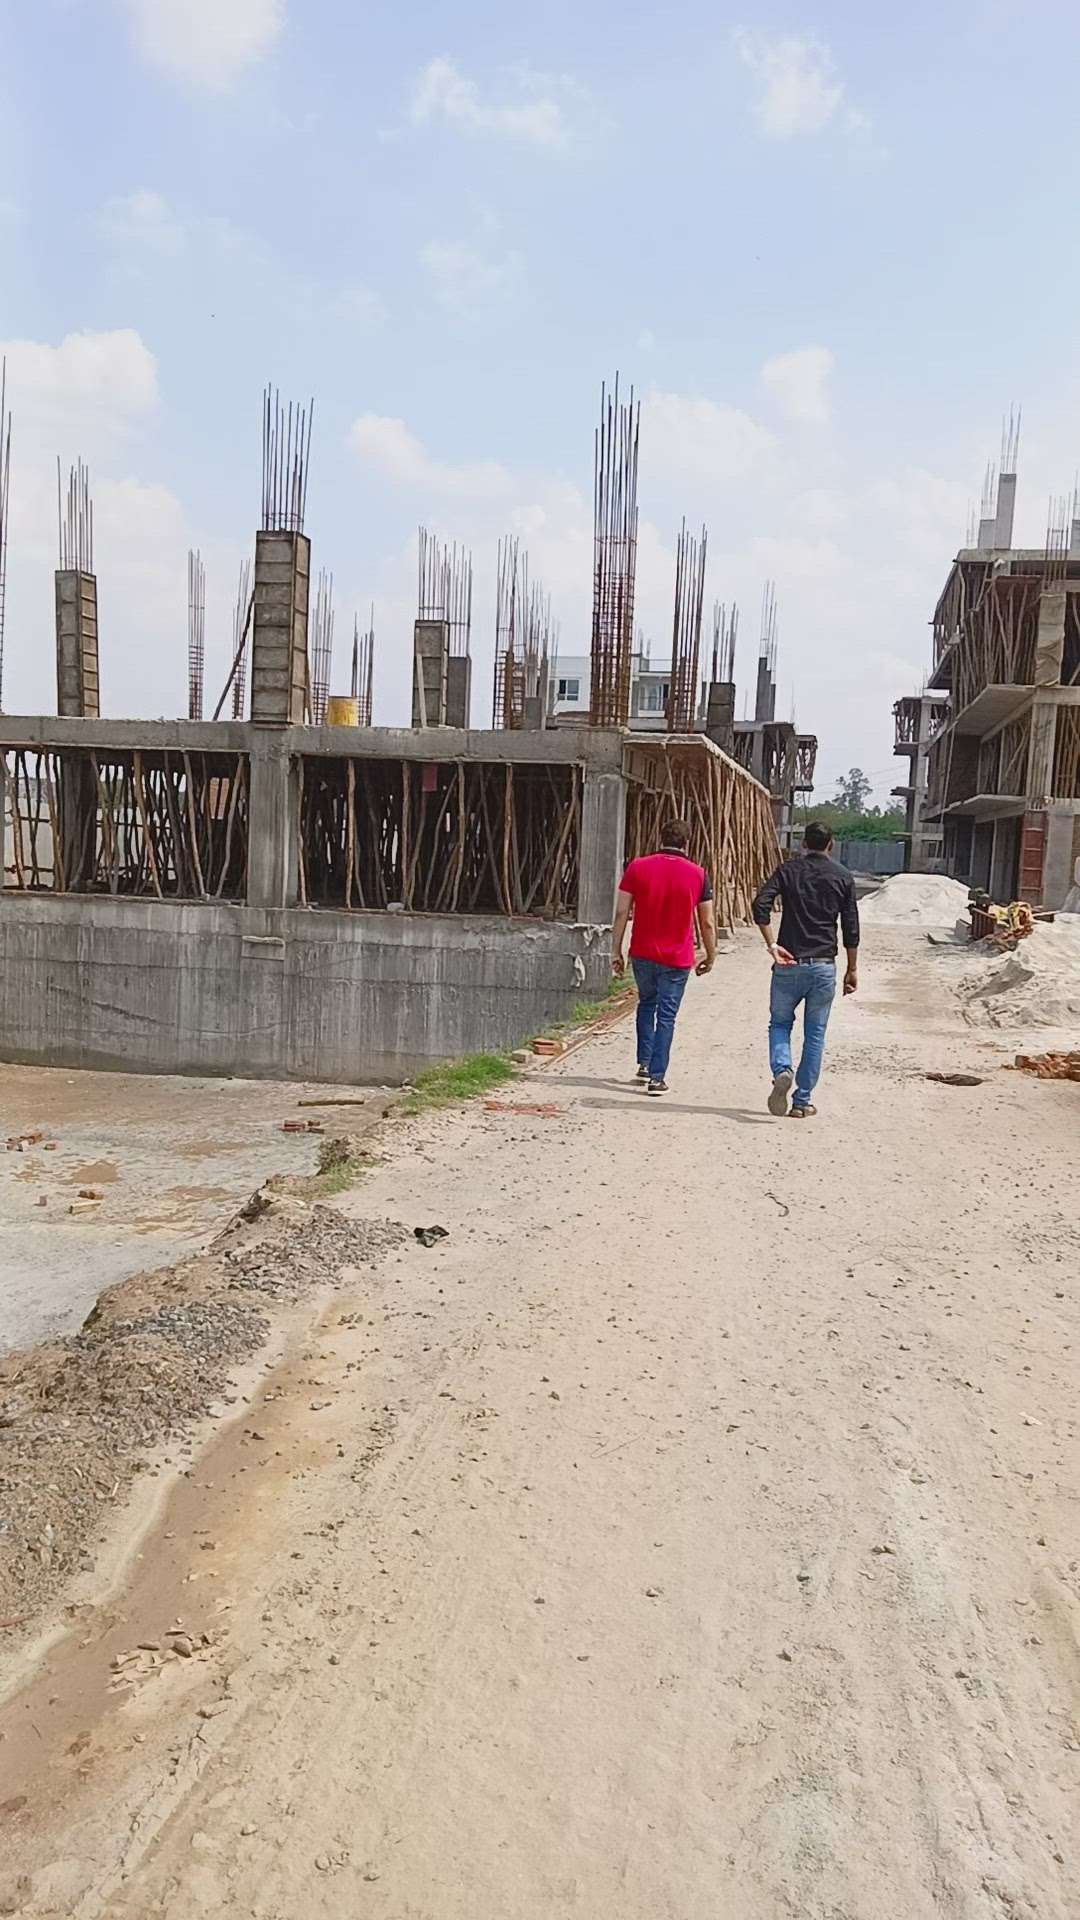 Construction Site Visit
#HouseConstruction #constructioncompany #Buildingconstruction